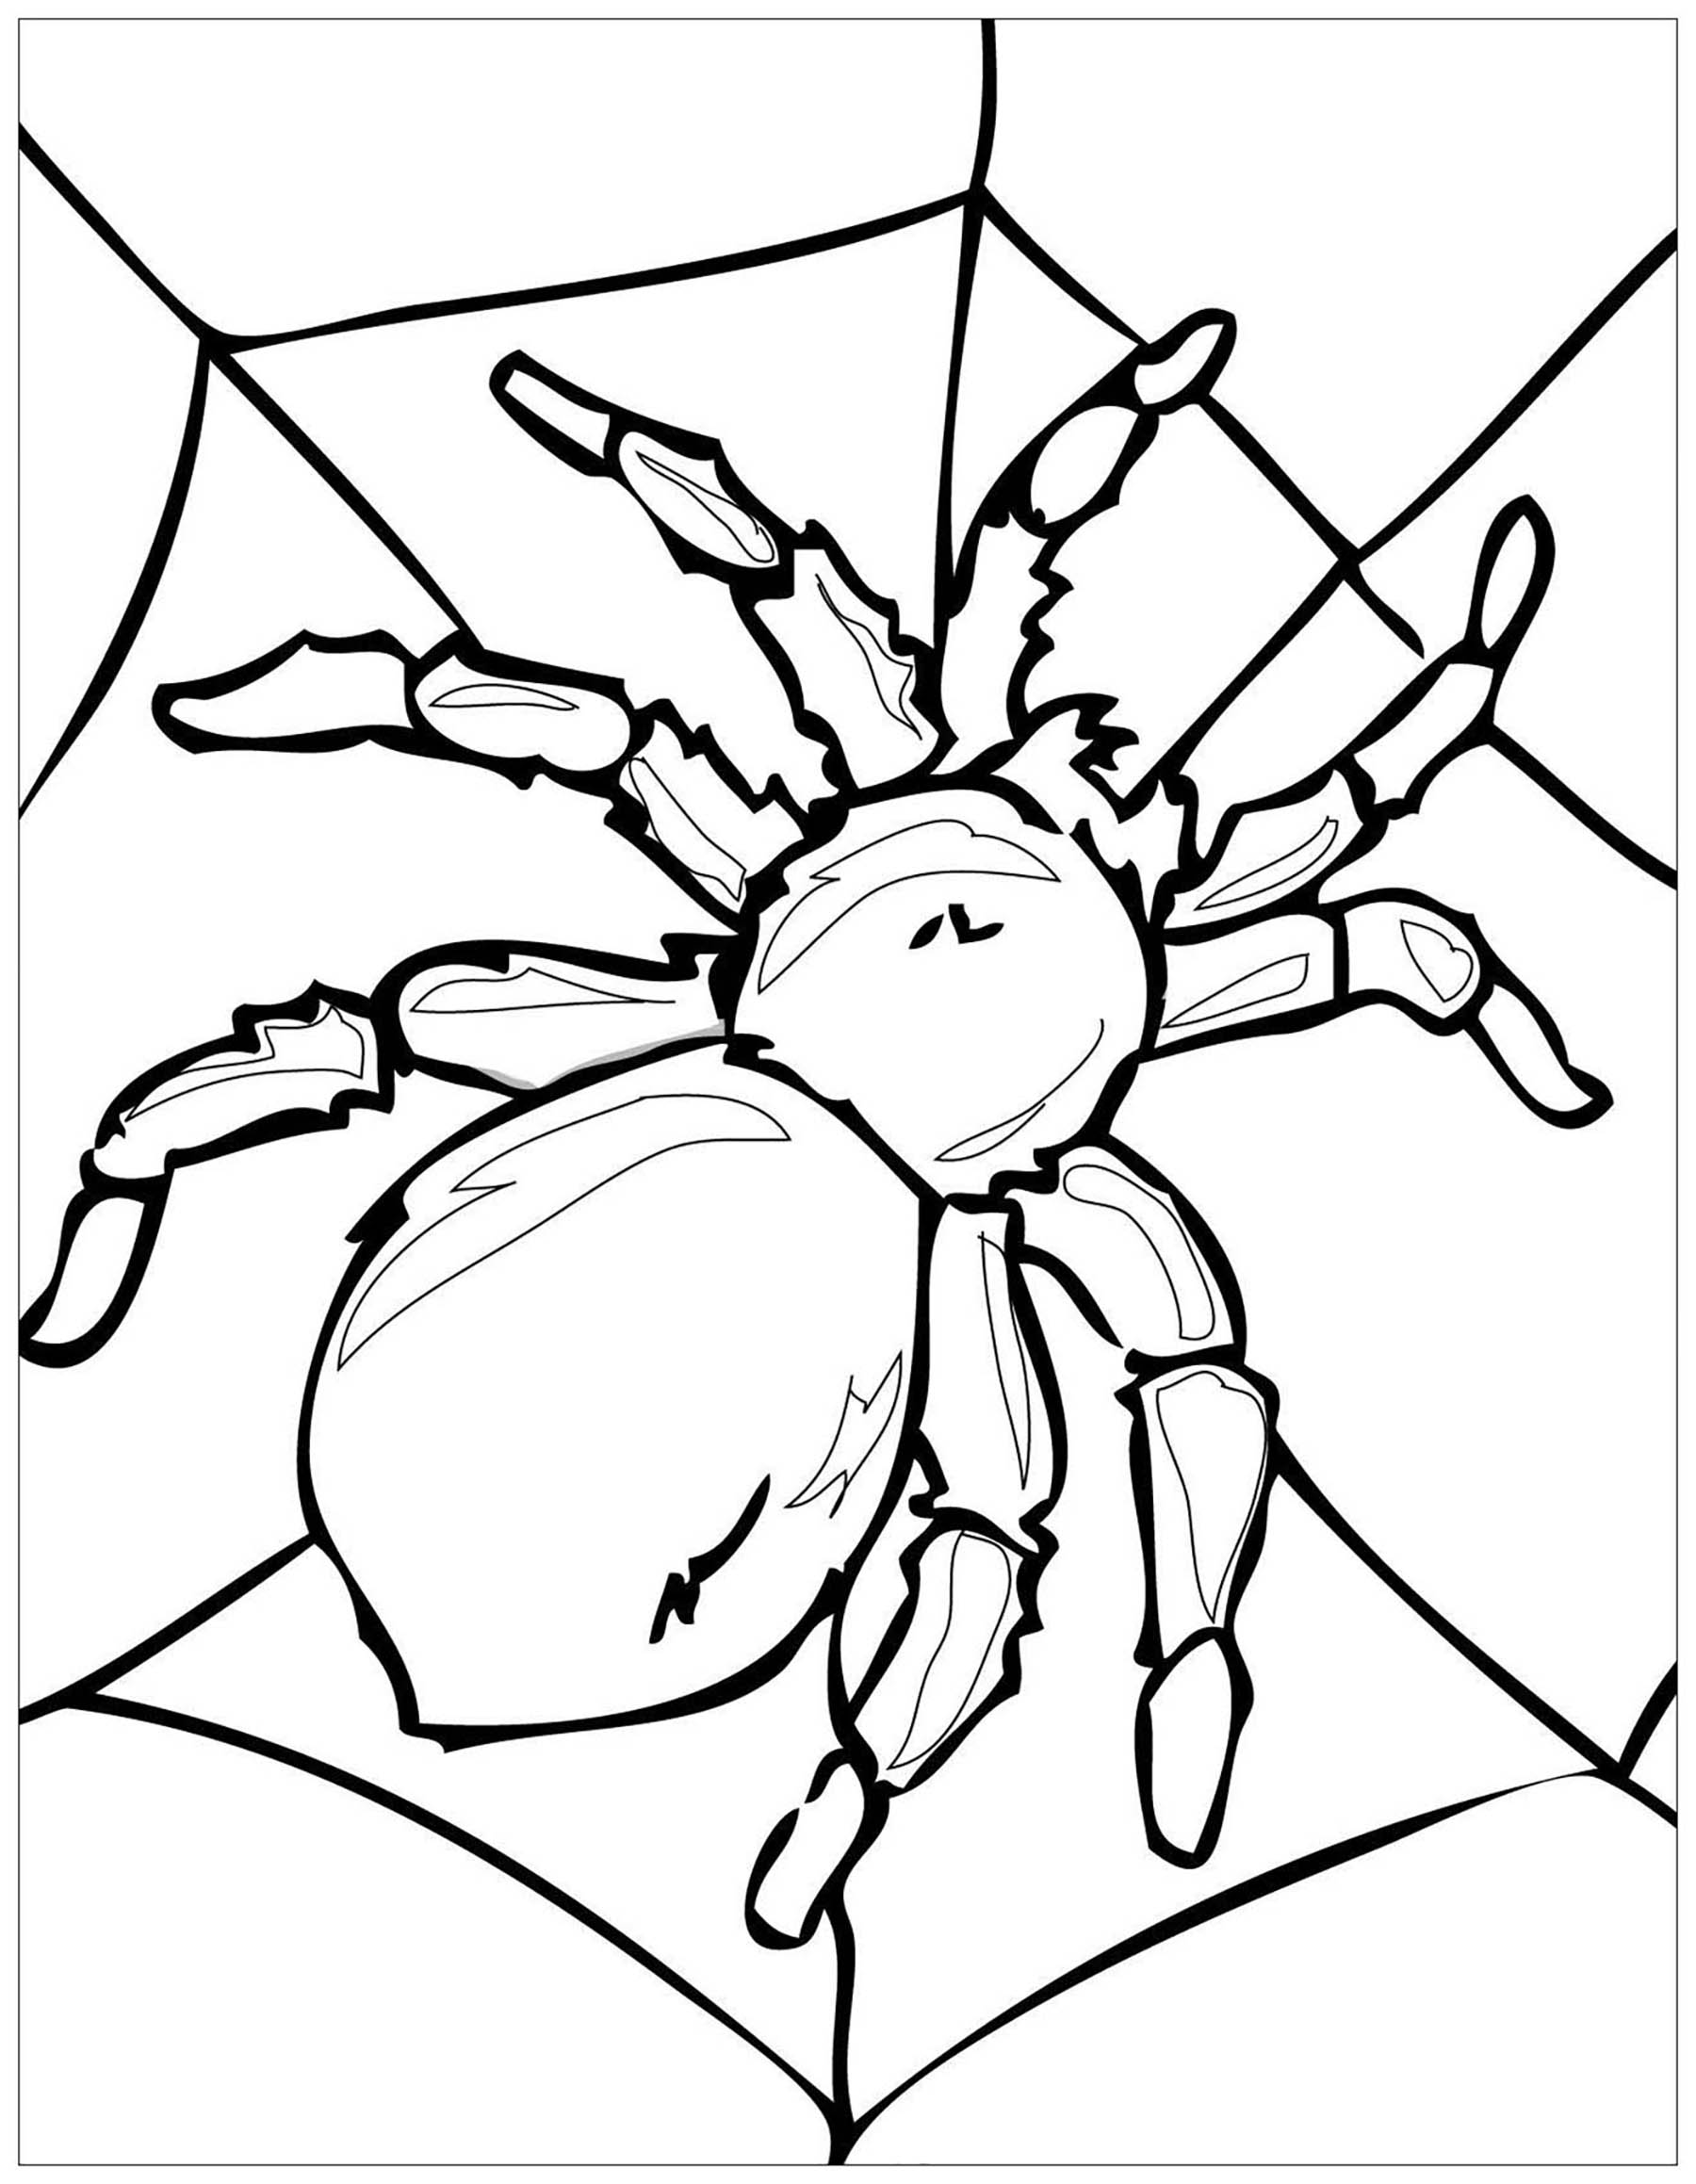 Male diese große Spinne auf ihrem Spinnennetz aus